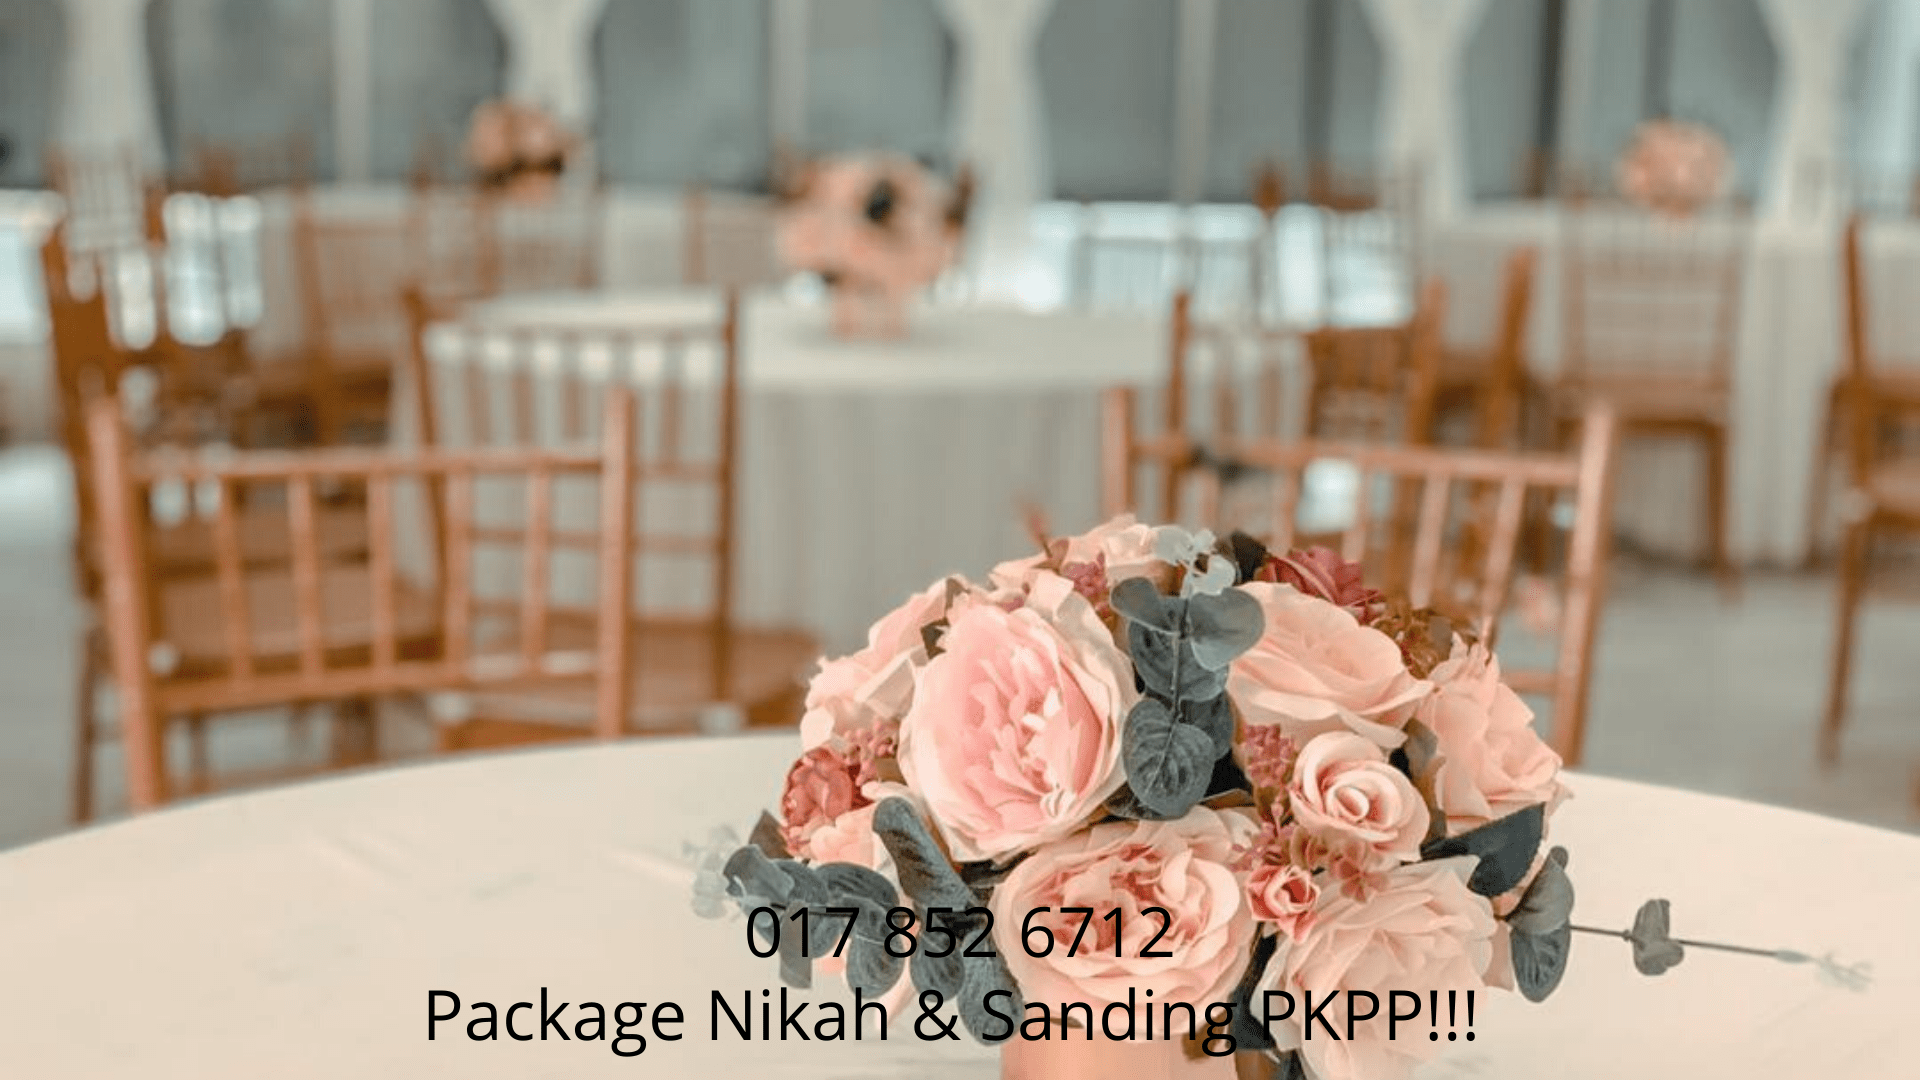 Package-Nikah-&-Sanding-0178526712